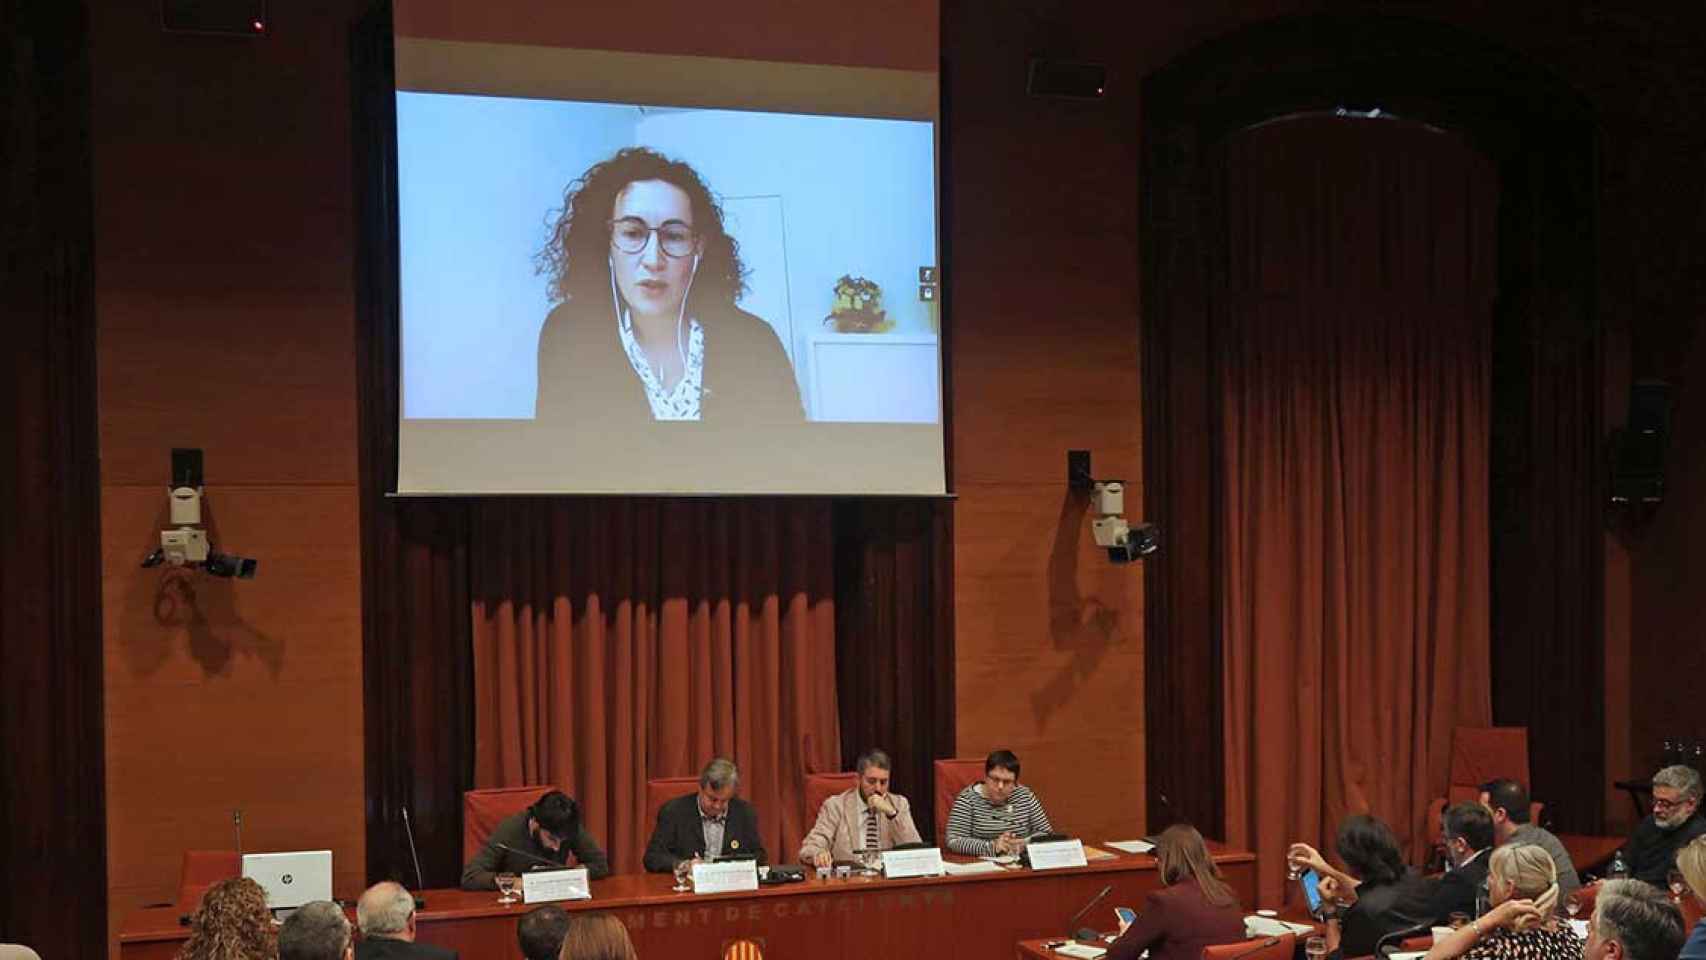 Marta Rovira comparece por videoconferencia en la denominada comisión del 155 del Parlamento de Cataluña / EUROPA PRESS